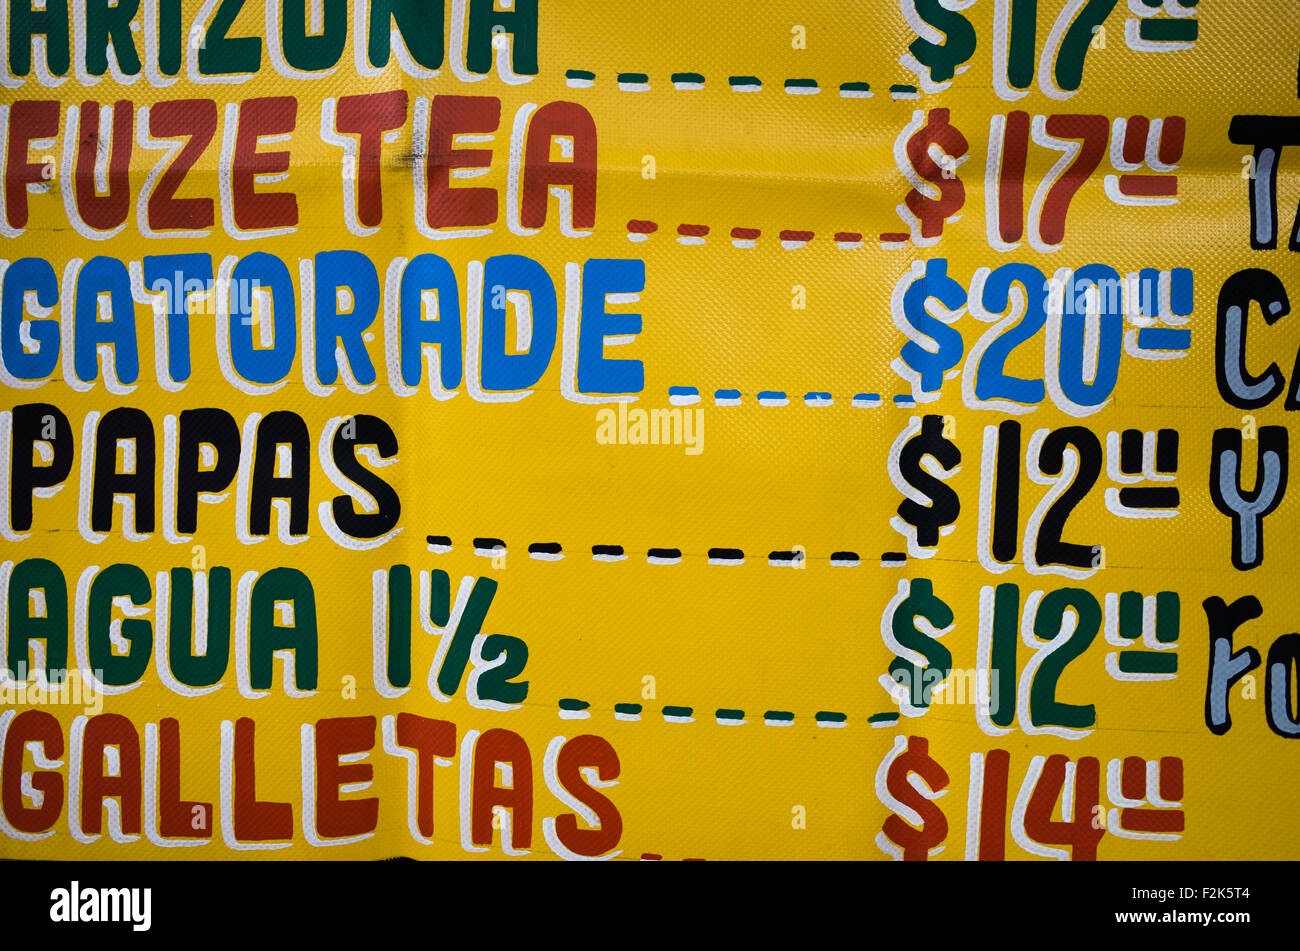 La liste de prix des boissons d'un vendeur de rue dans la ville de Mexico. Banque D'Images